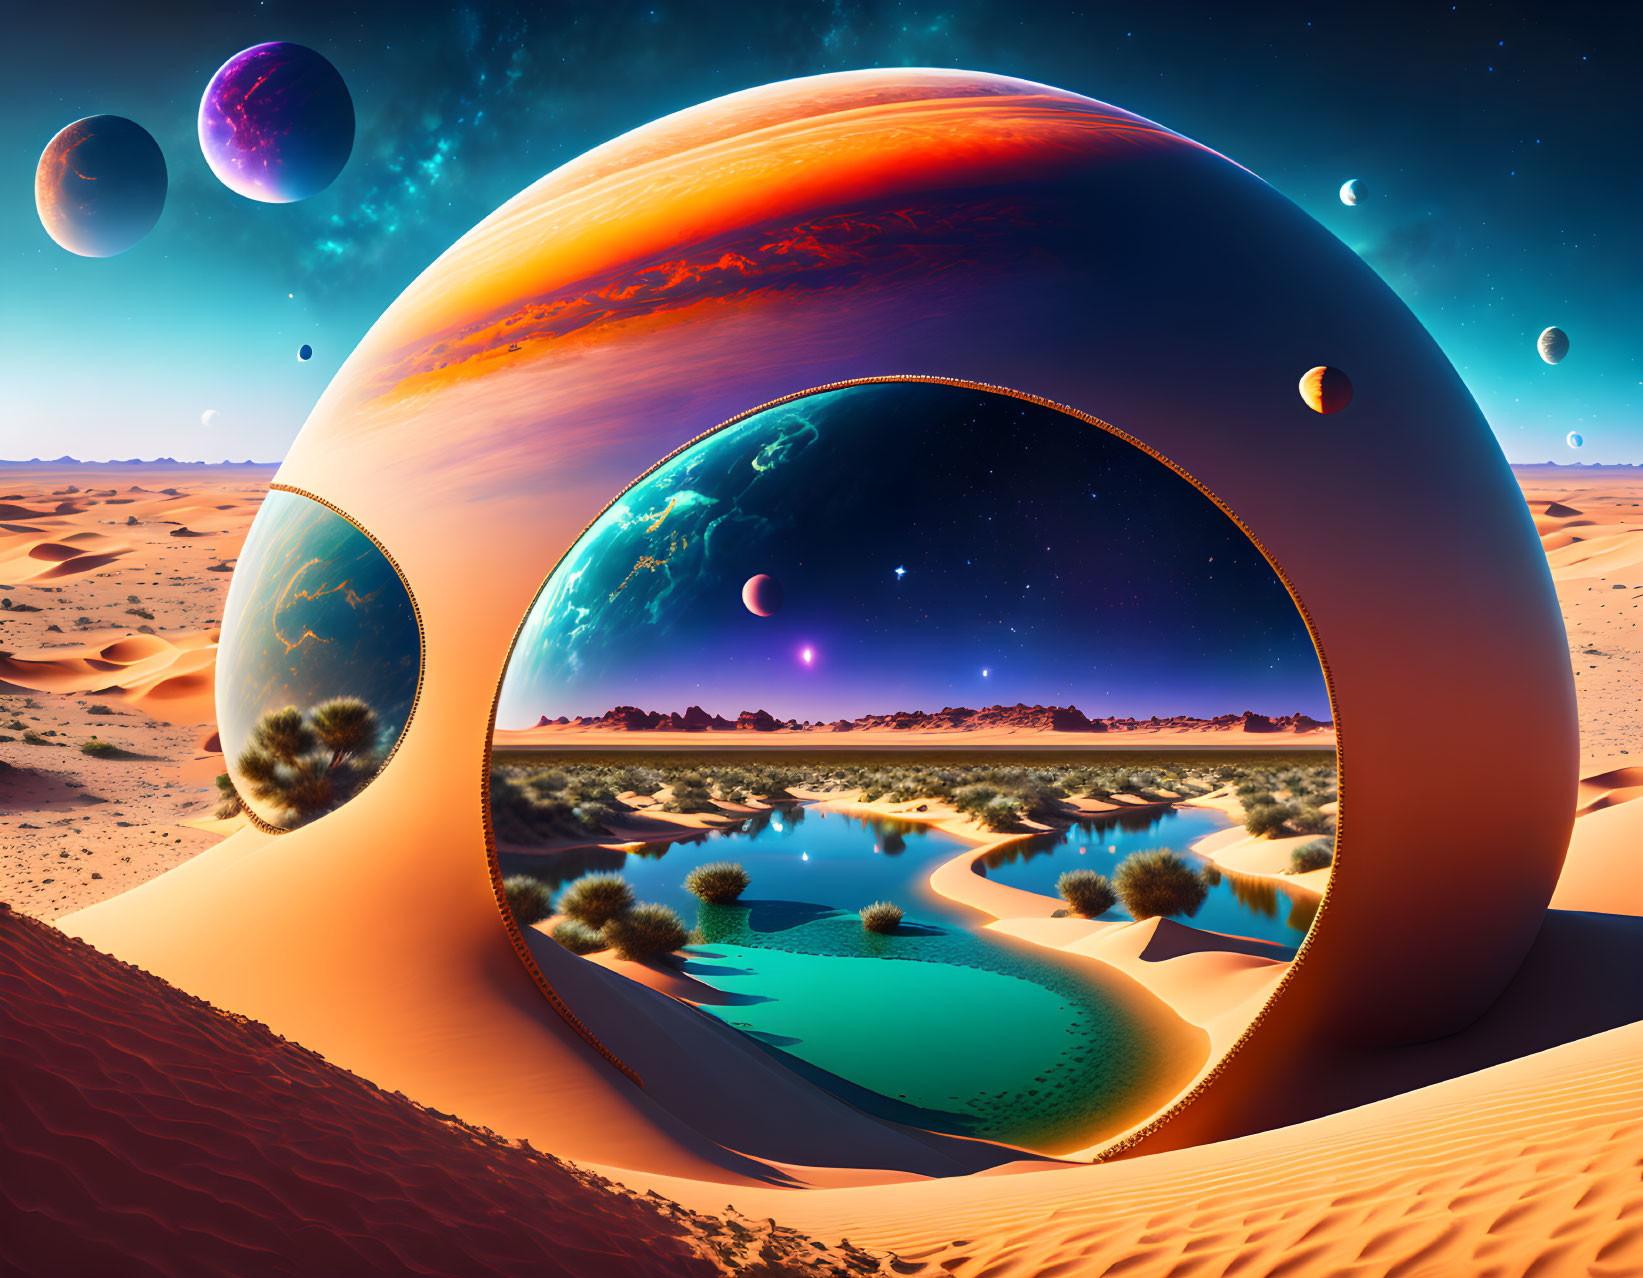 Futuristic mirrored sphere in surreal desert landscape